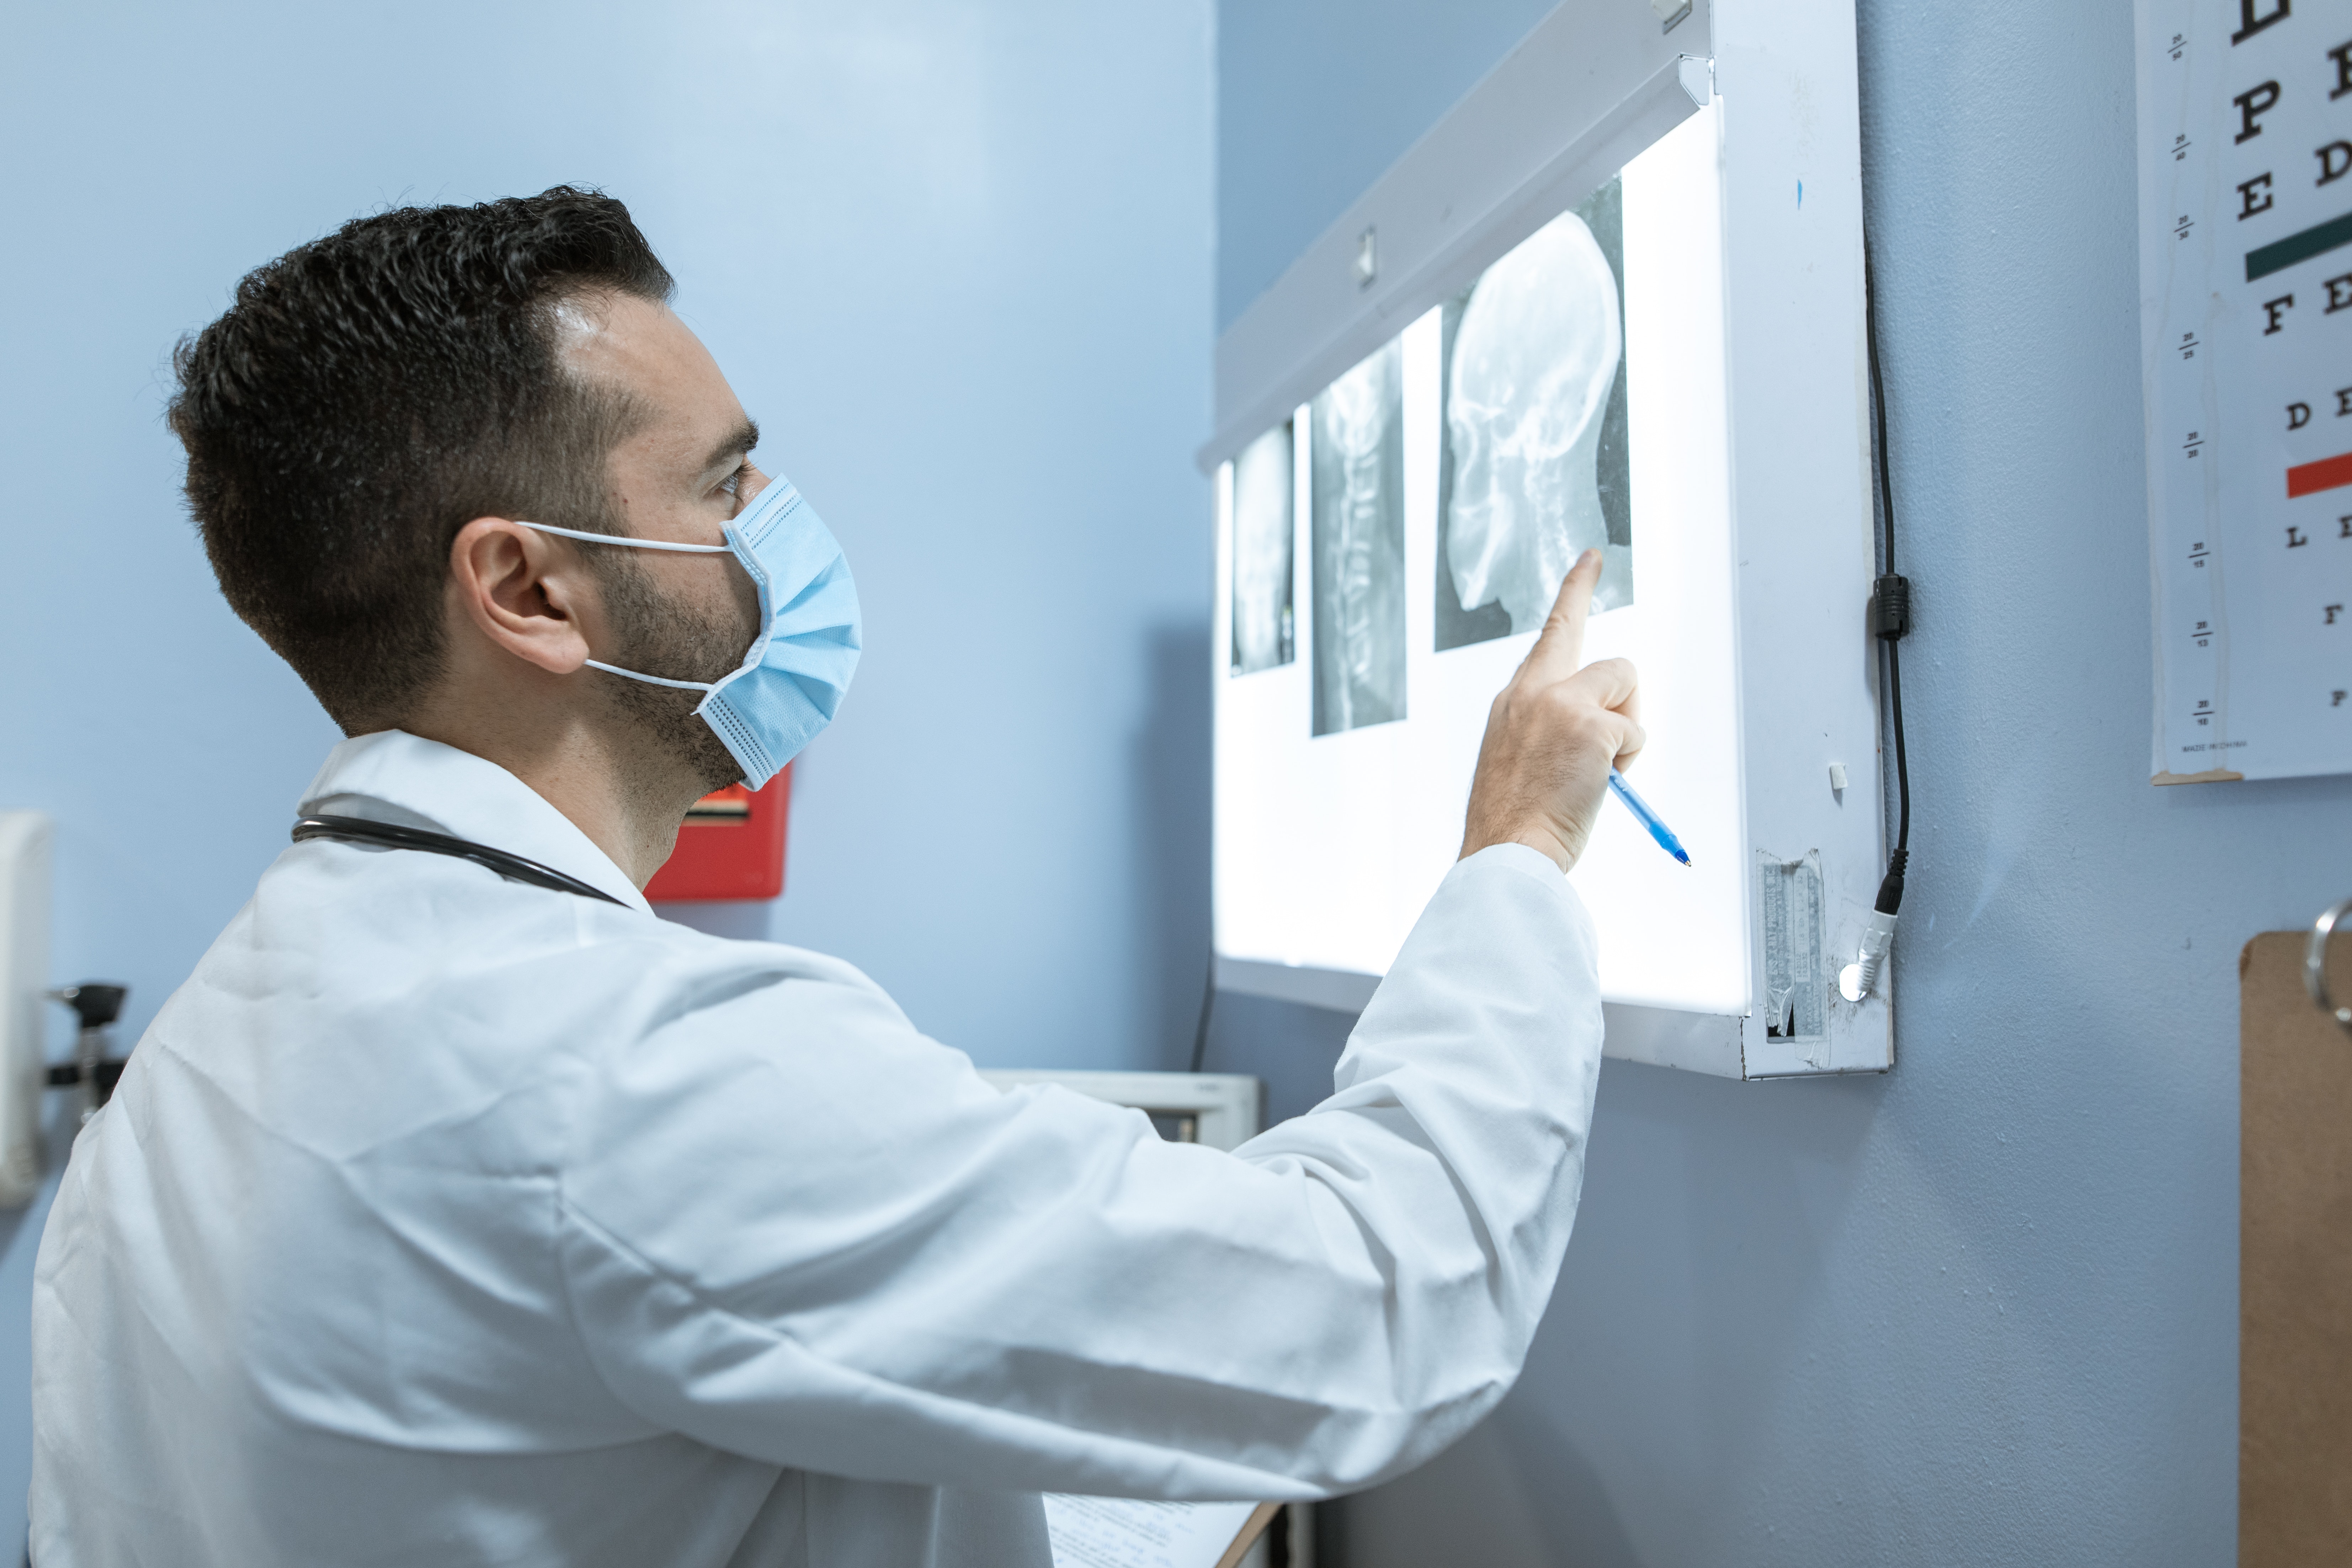 Doctor examining x-rays